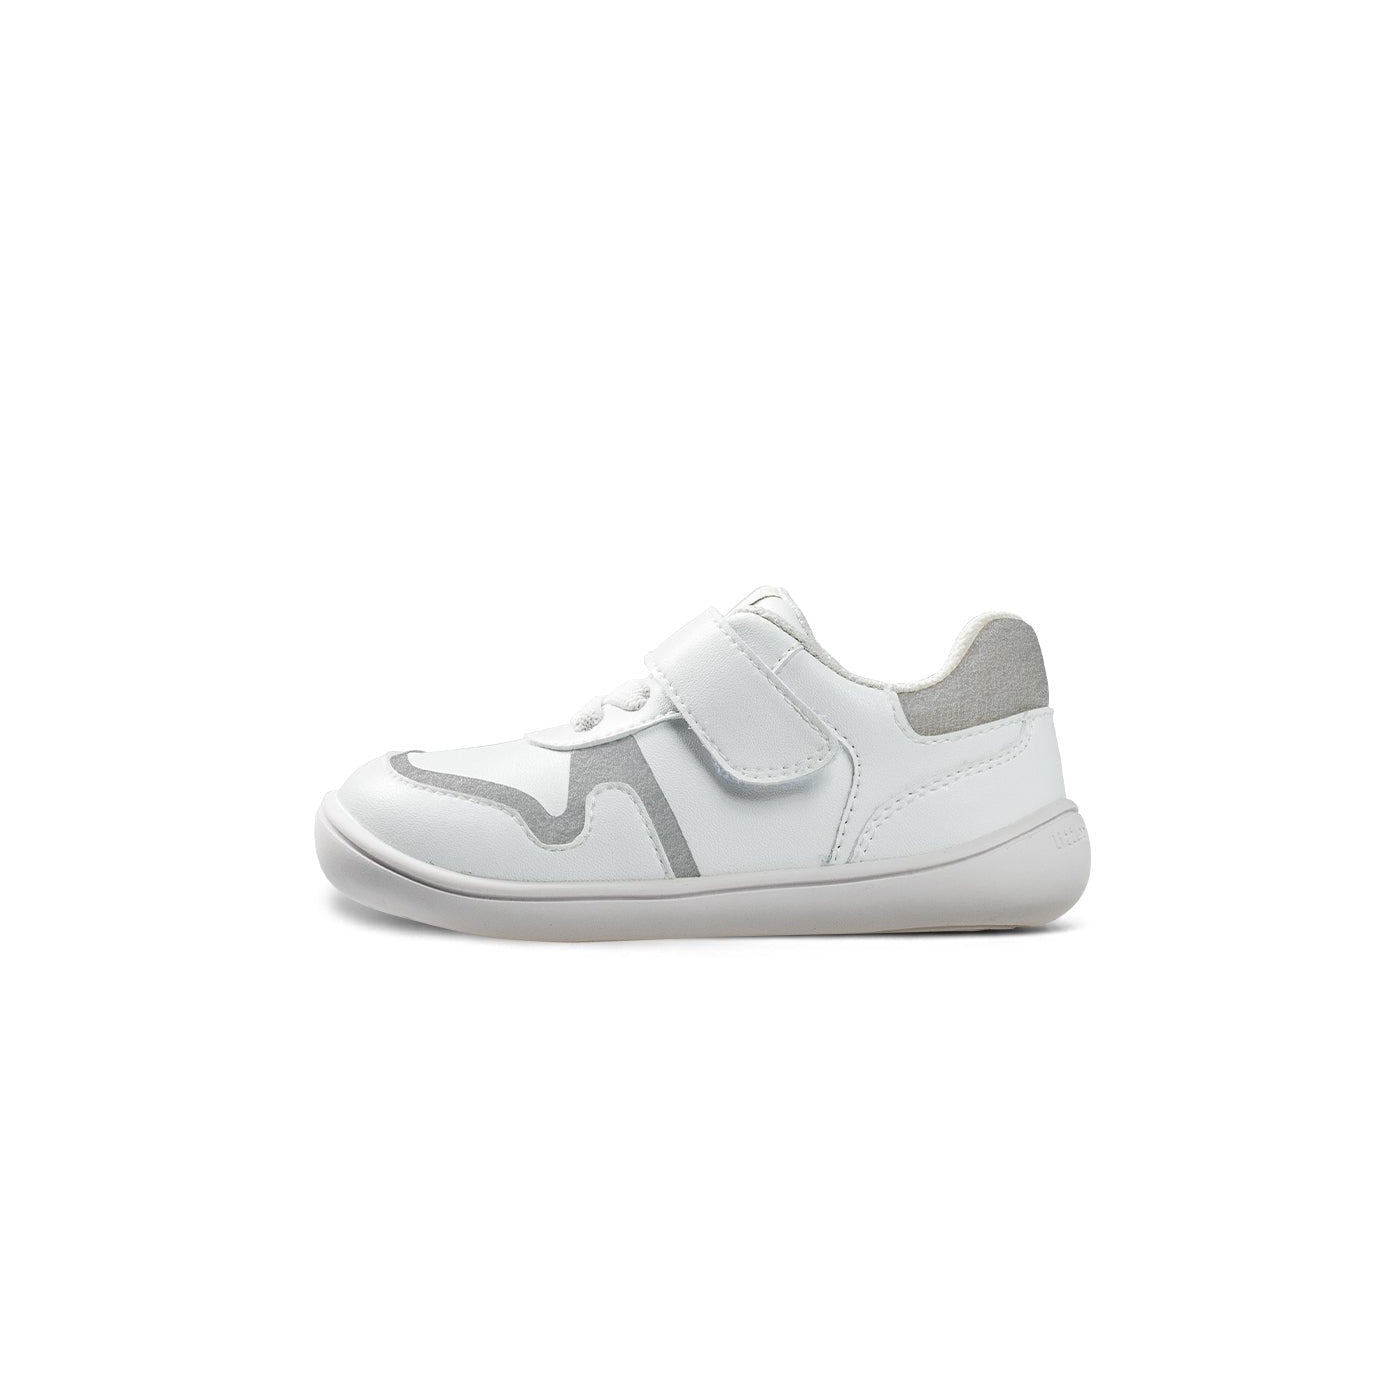 HopHop Soft Sole Anti-slip Pre-walker White Baby Sneakers - 0cm